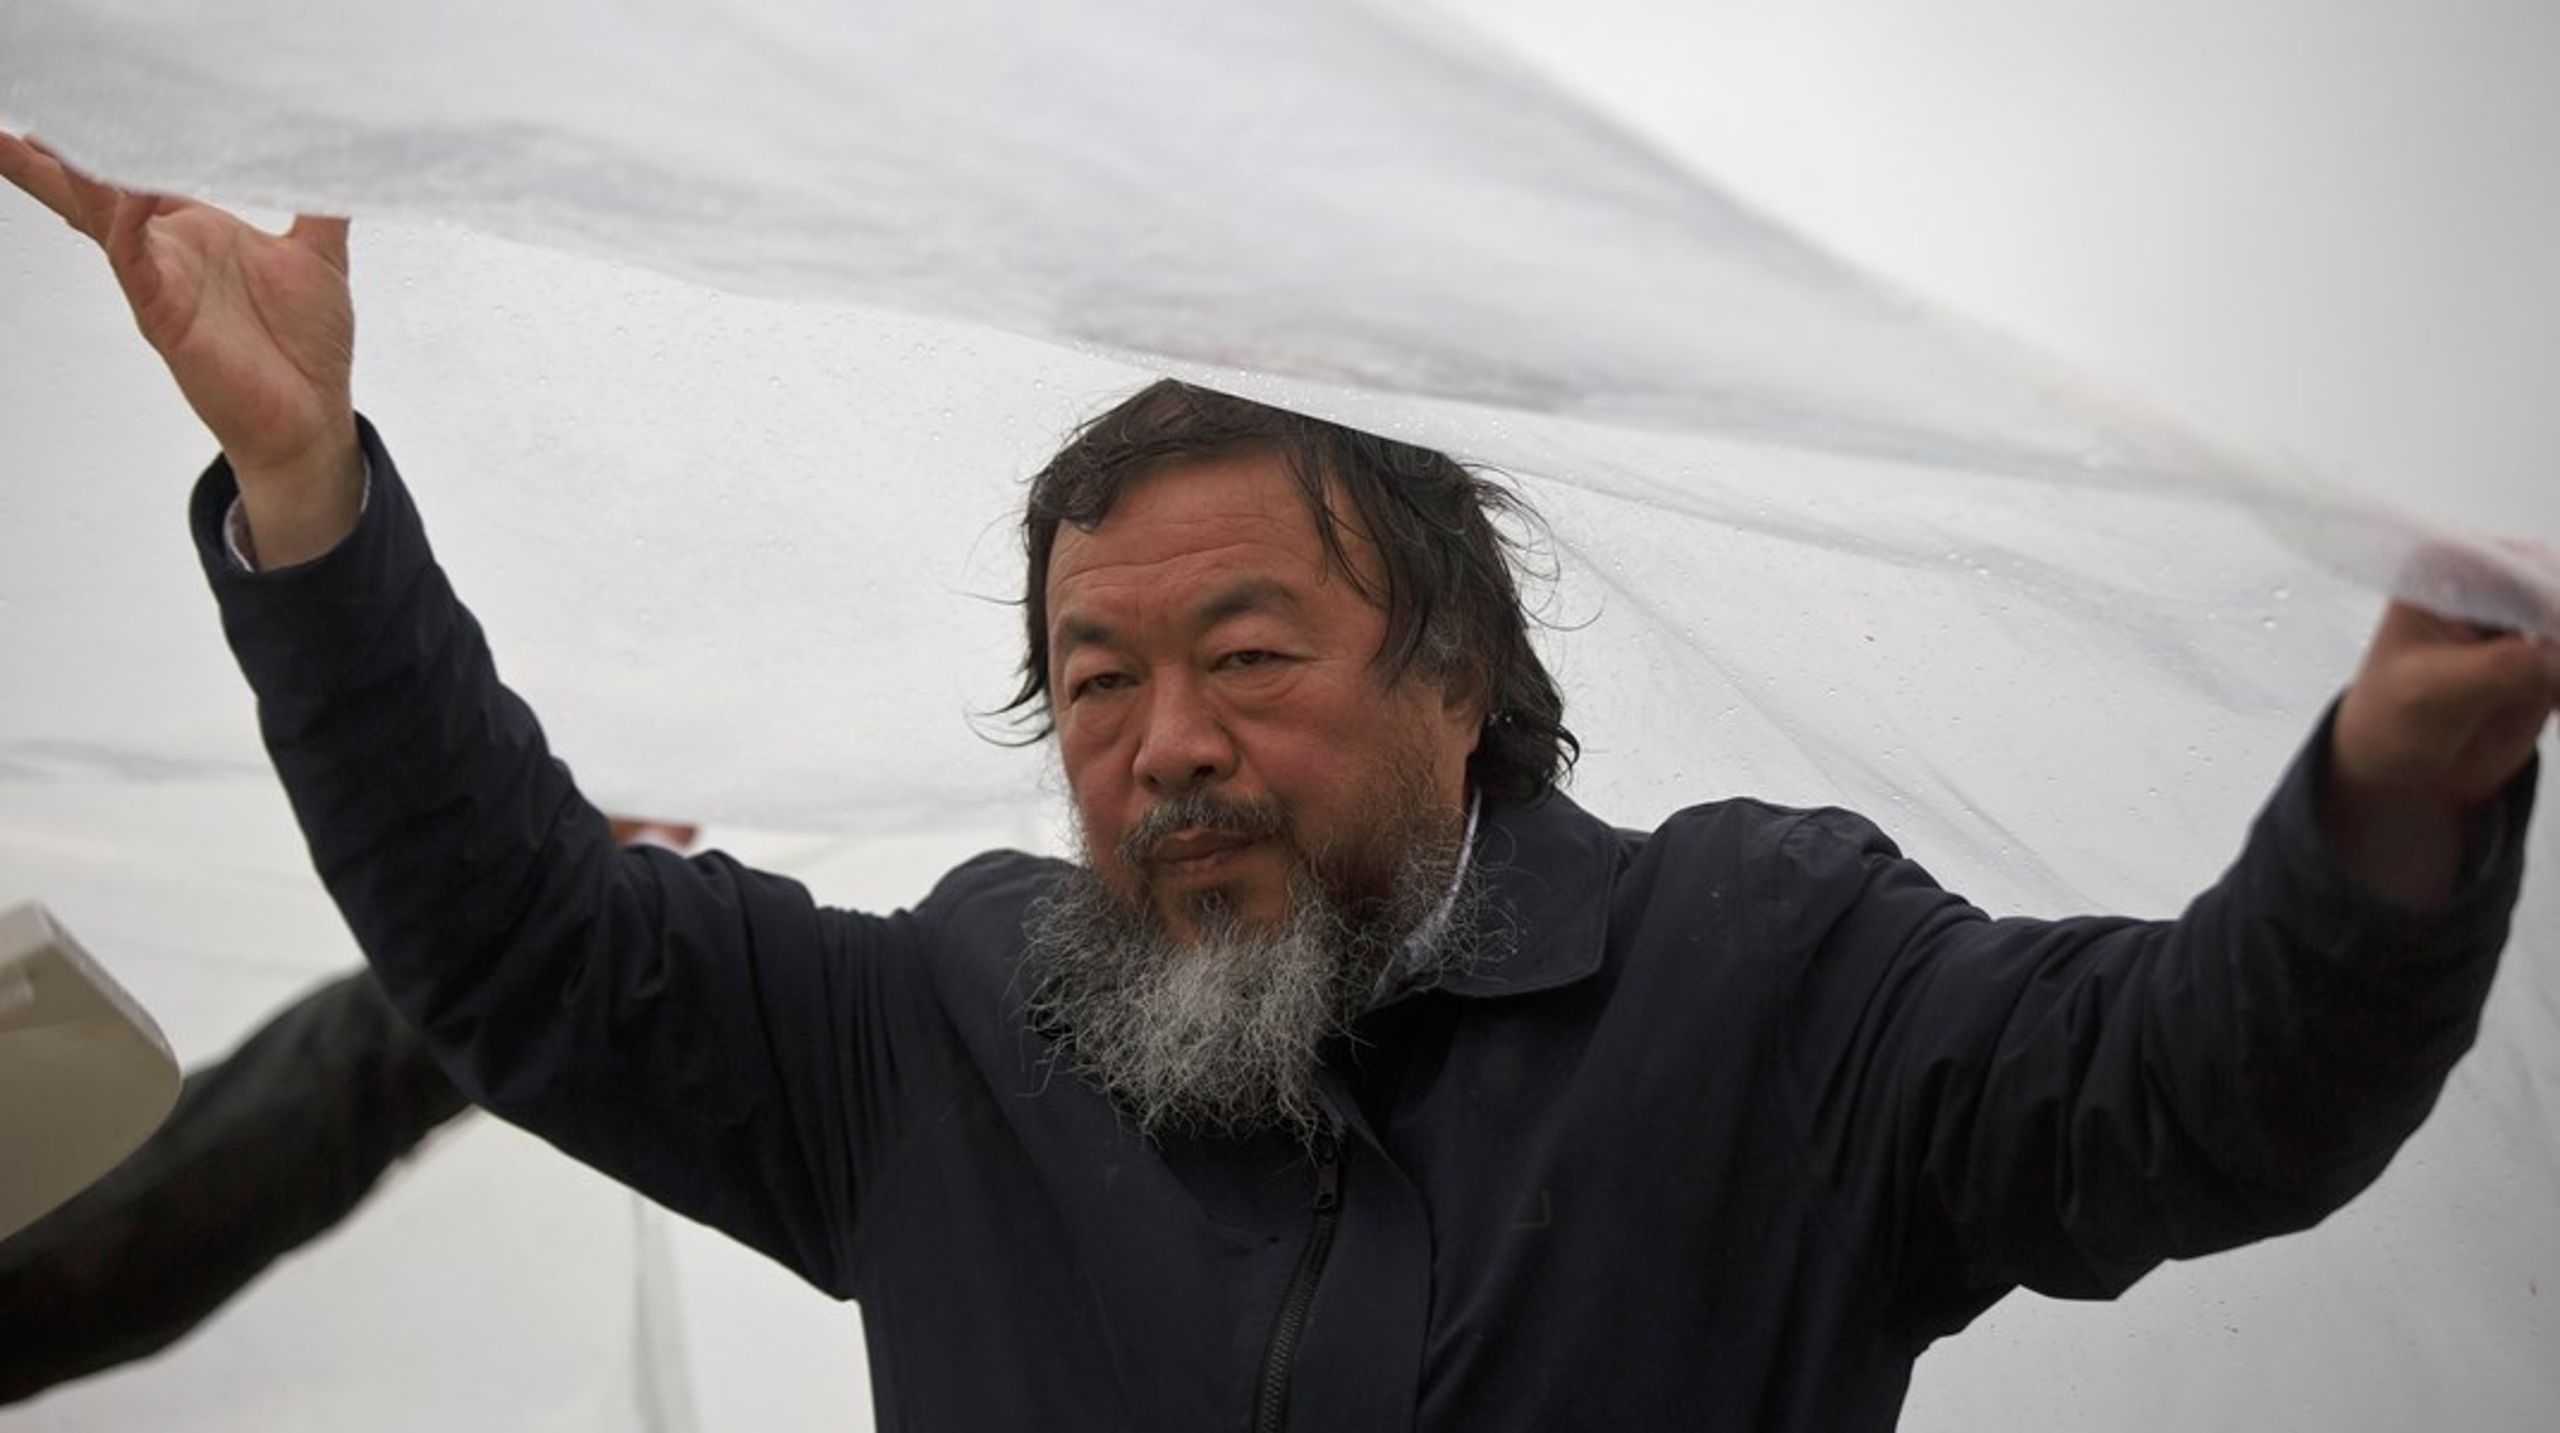 Vi fornærmer os selv, når vi udøver selvcensur, siger kunstneren&nbsp;Ai Weiwei. Så spørgsmålet er, hvorfor civilsamfundet i Danmark alligevel synes at gøre det, skriver Eva Svavars.&nbsp;<br>